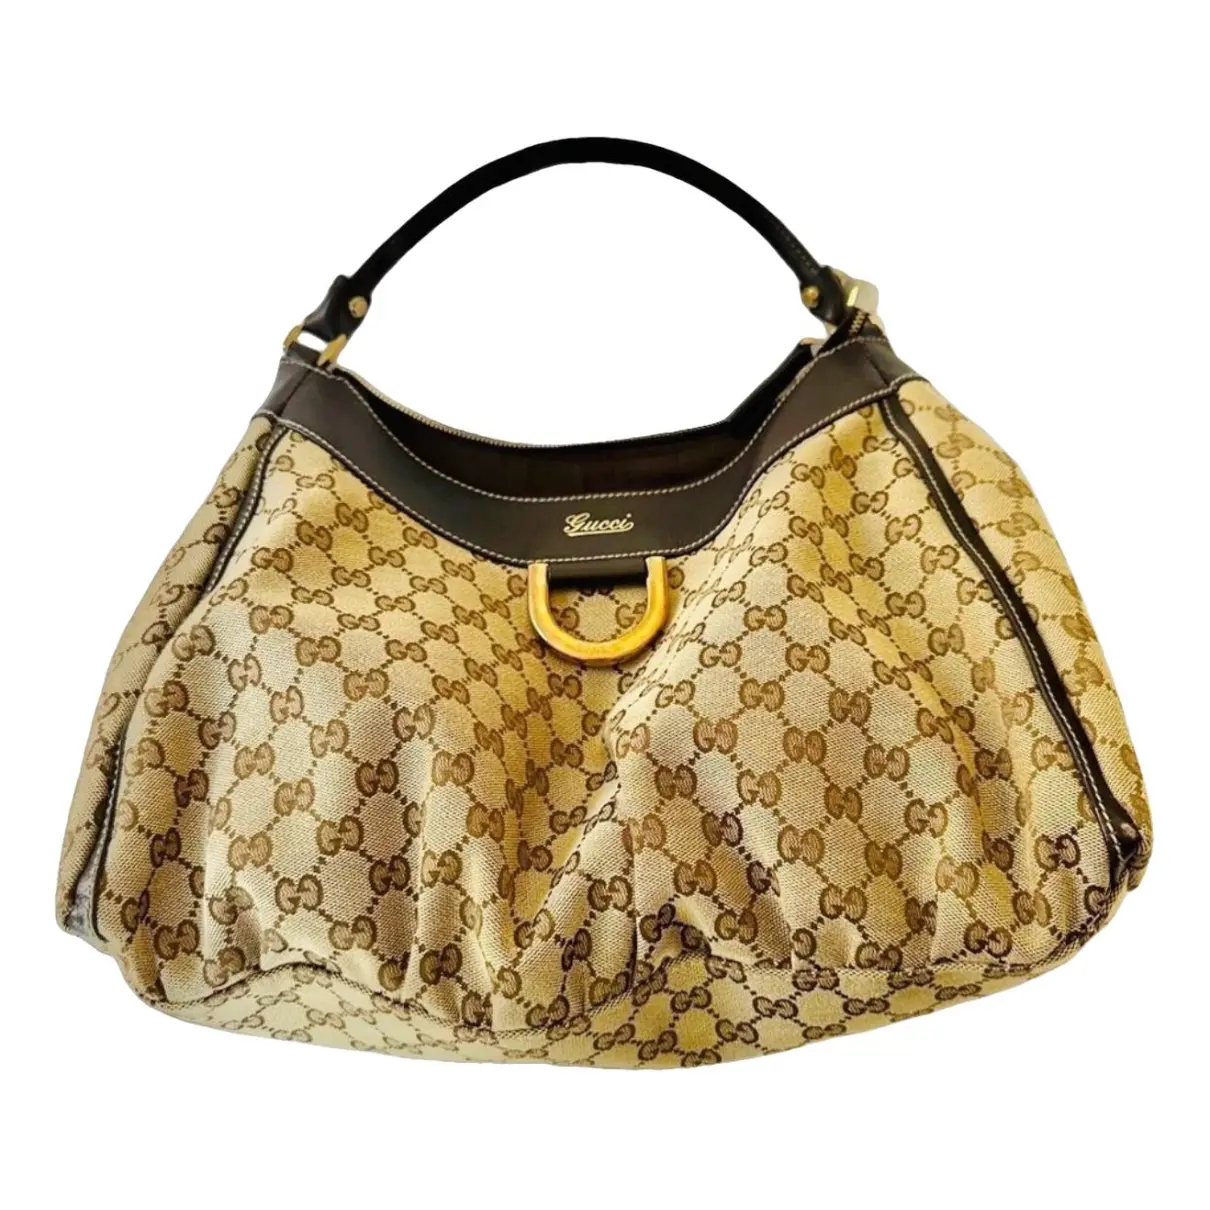 D-Ring cloth handbag Gucci